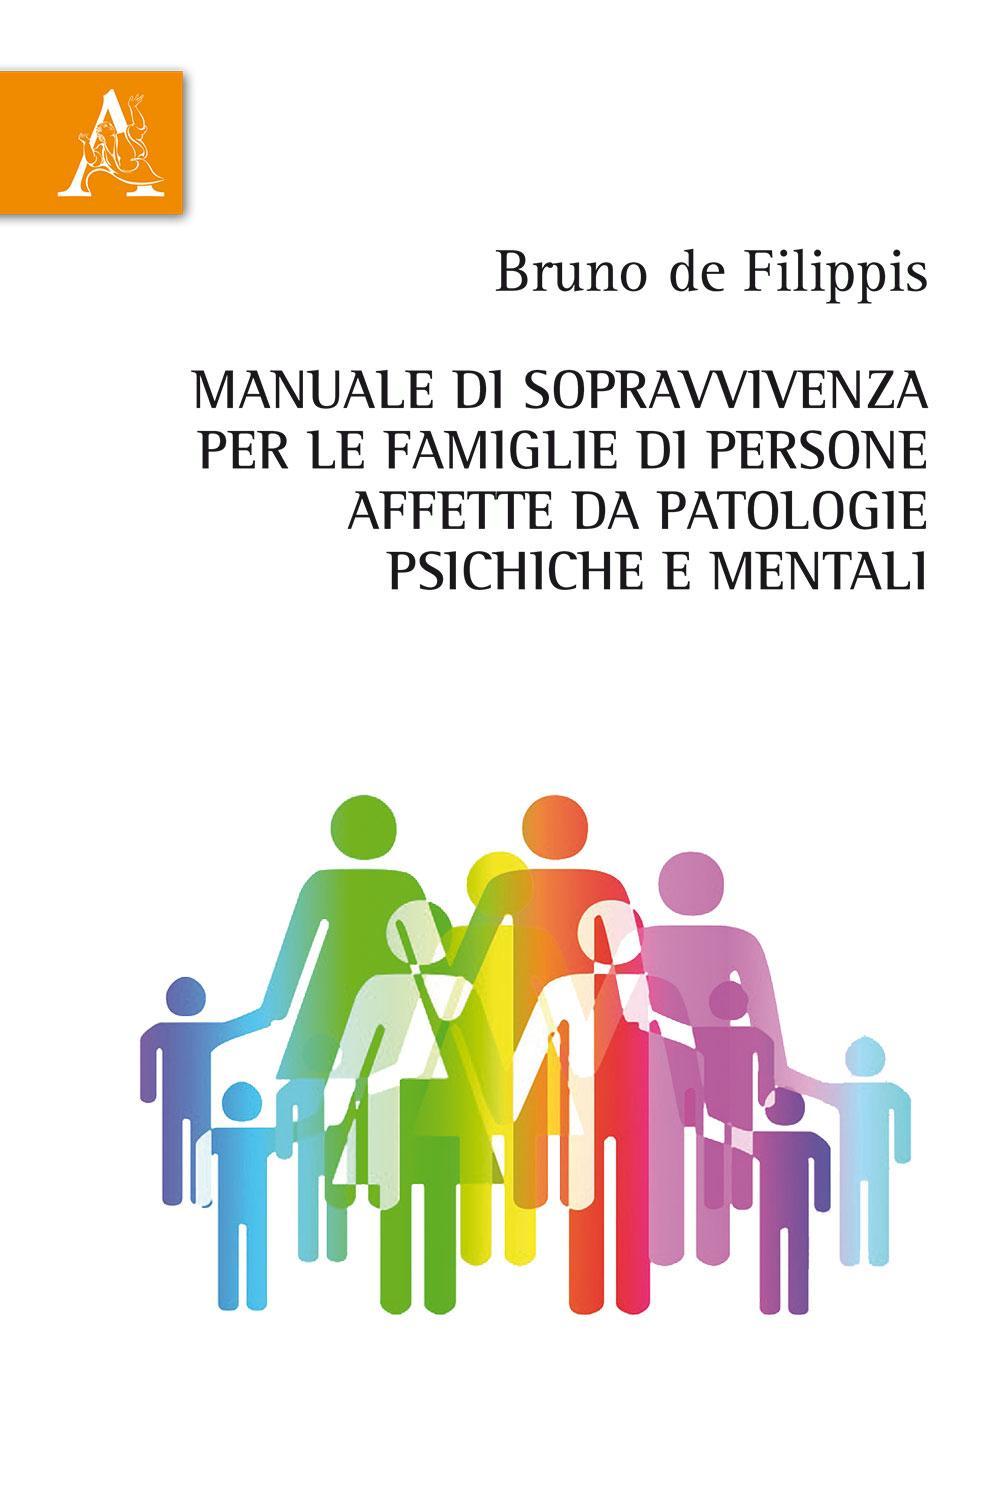 Manuale di sopravvivenza per le famiglie di persone affette da patologie psichiche e mentali